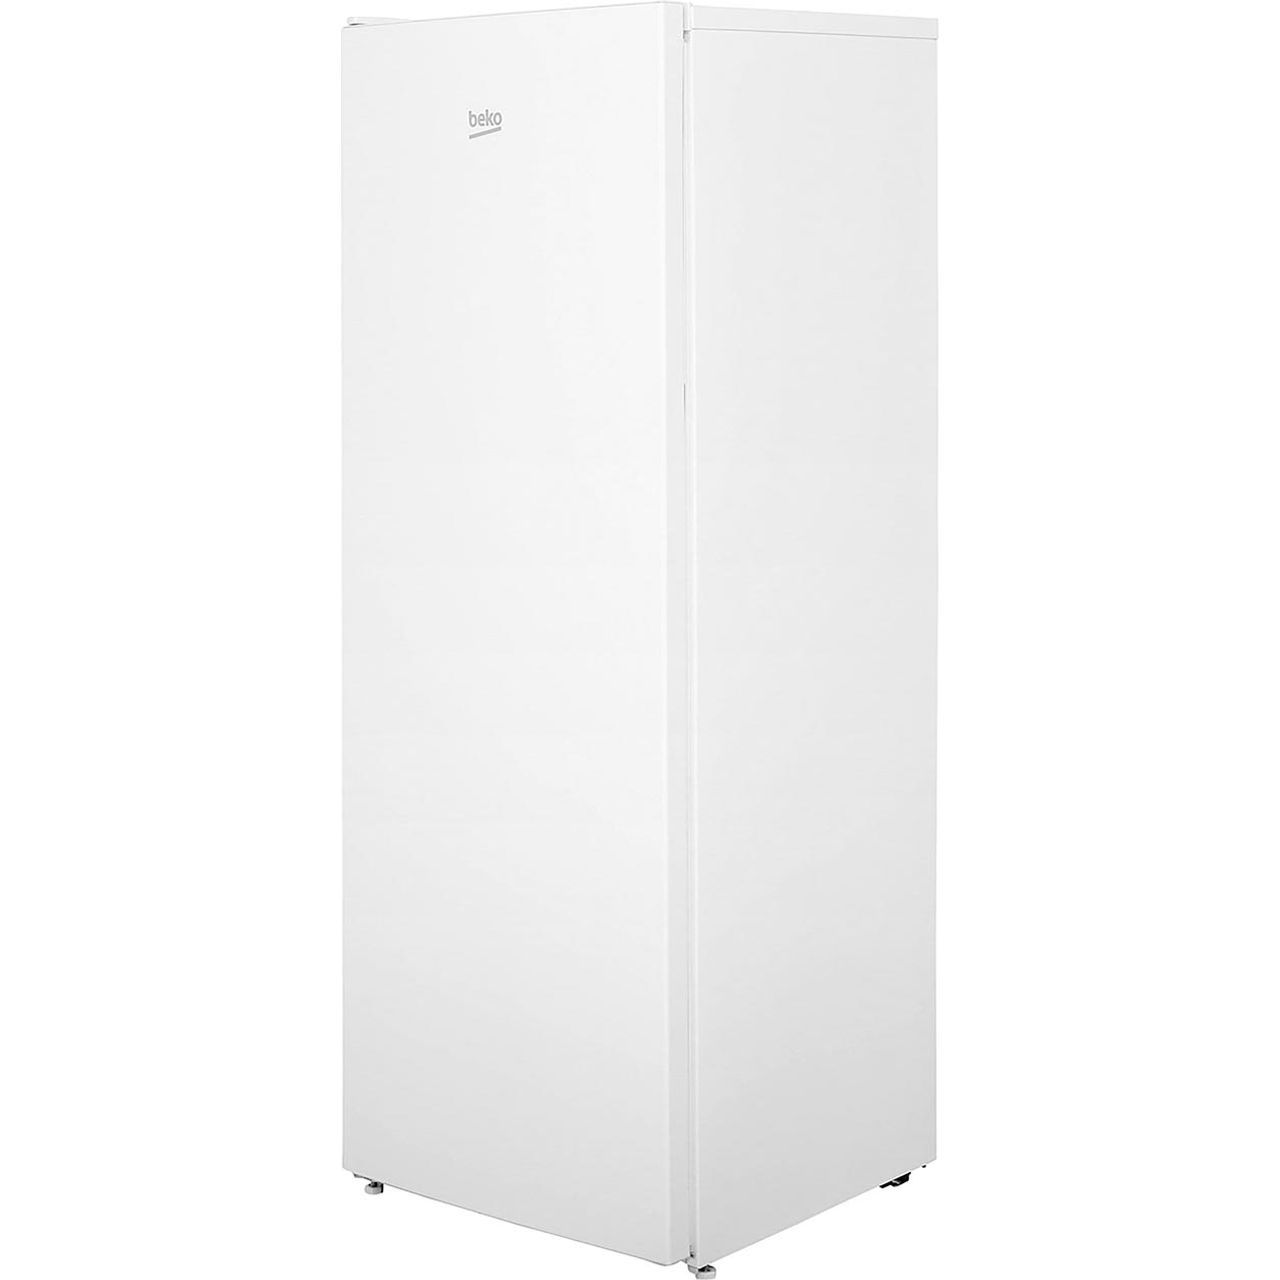 Beko FSG1545W Upright Freezer Review